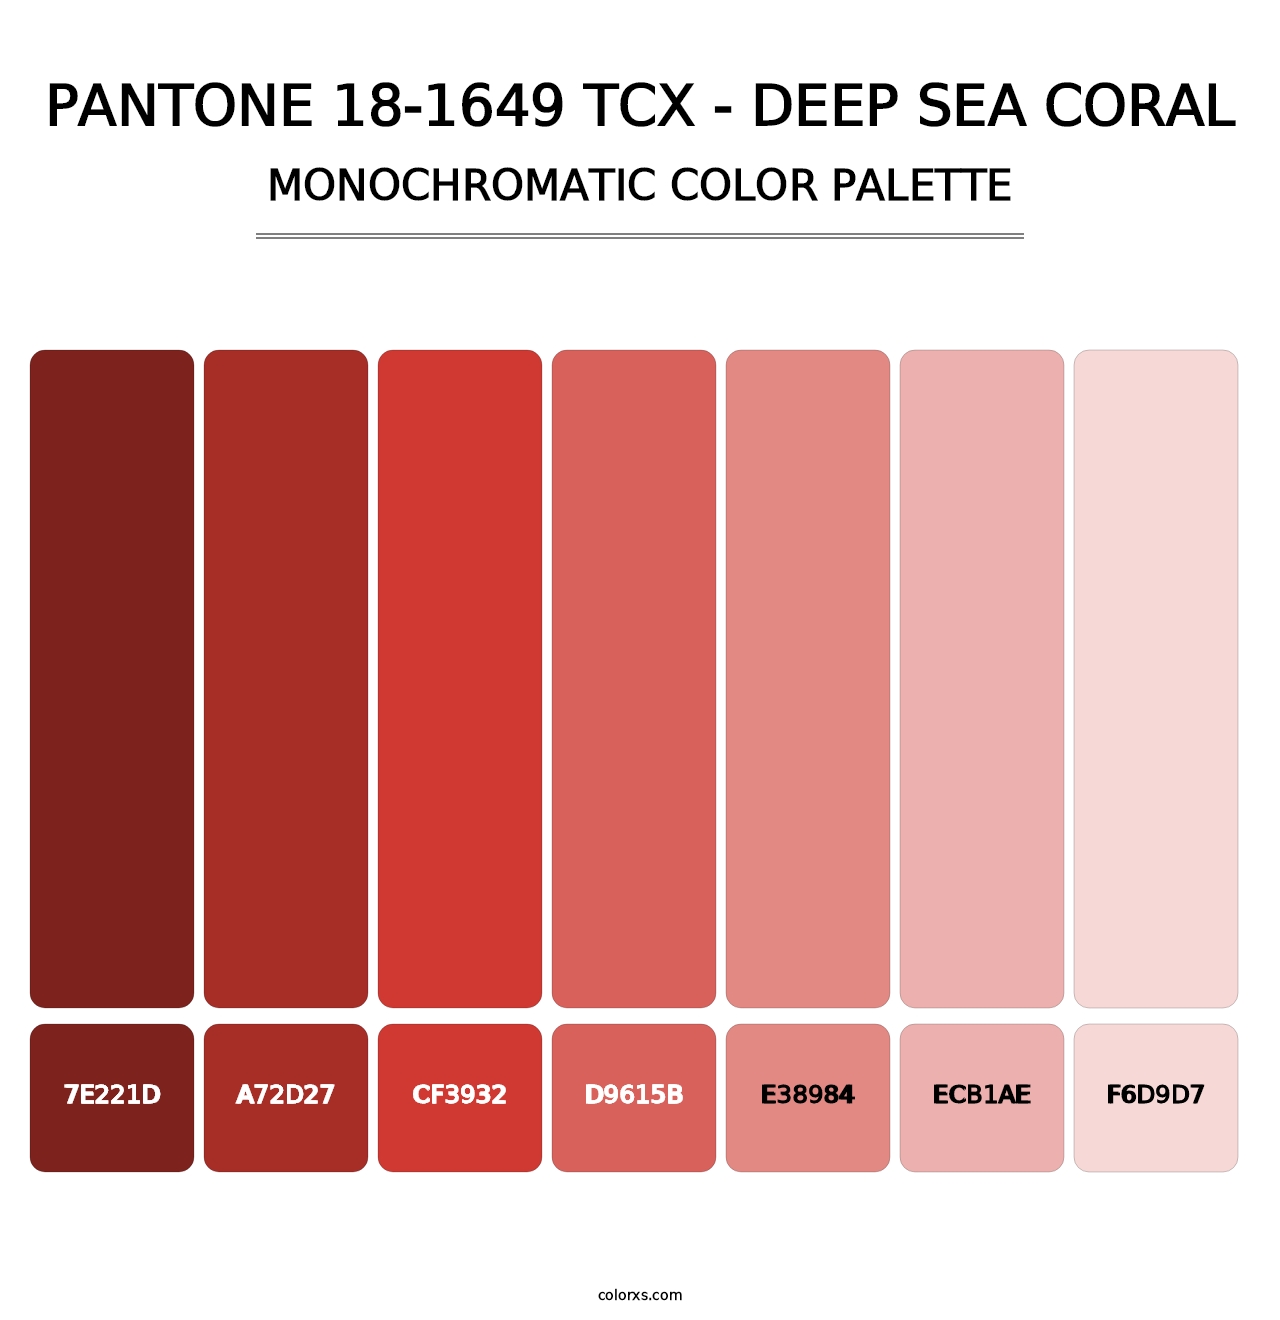 PANTONE 18-1649 TCX - Deep Sea Coral - Monochromatic Color Palette